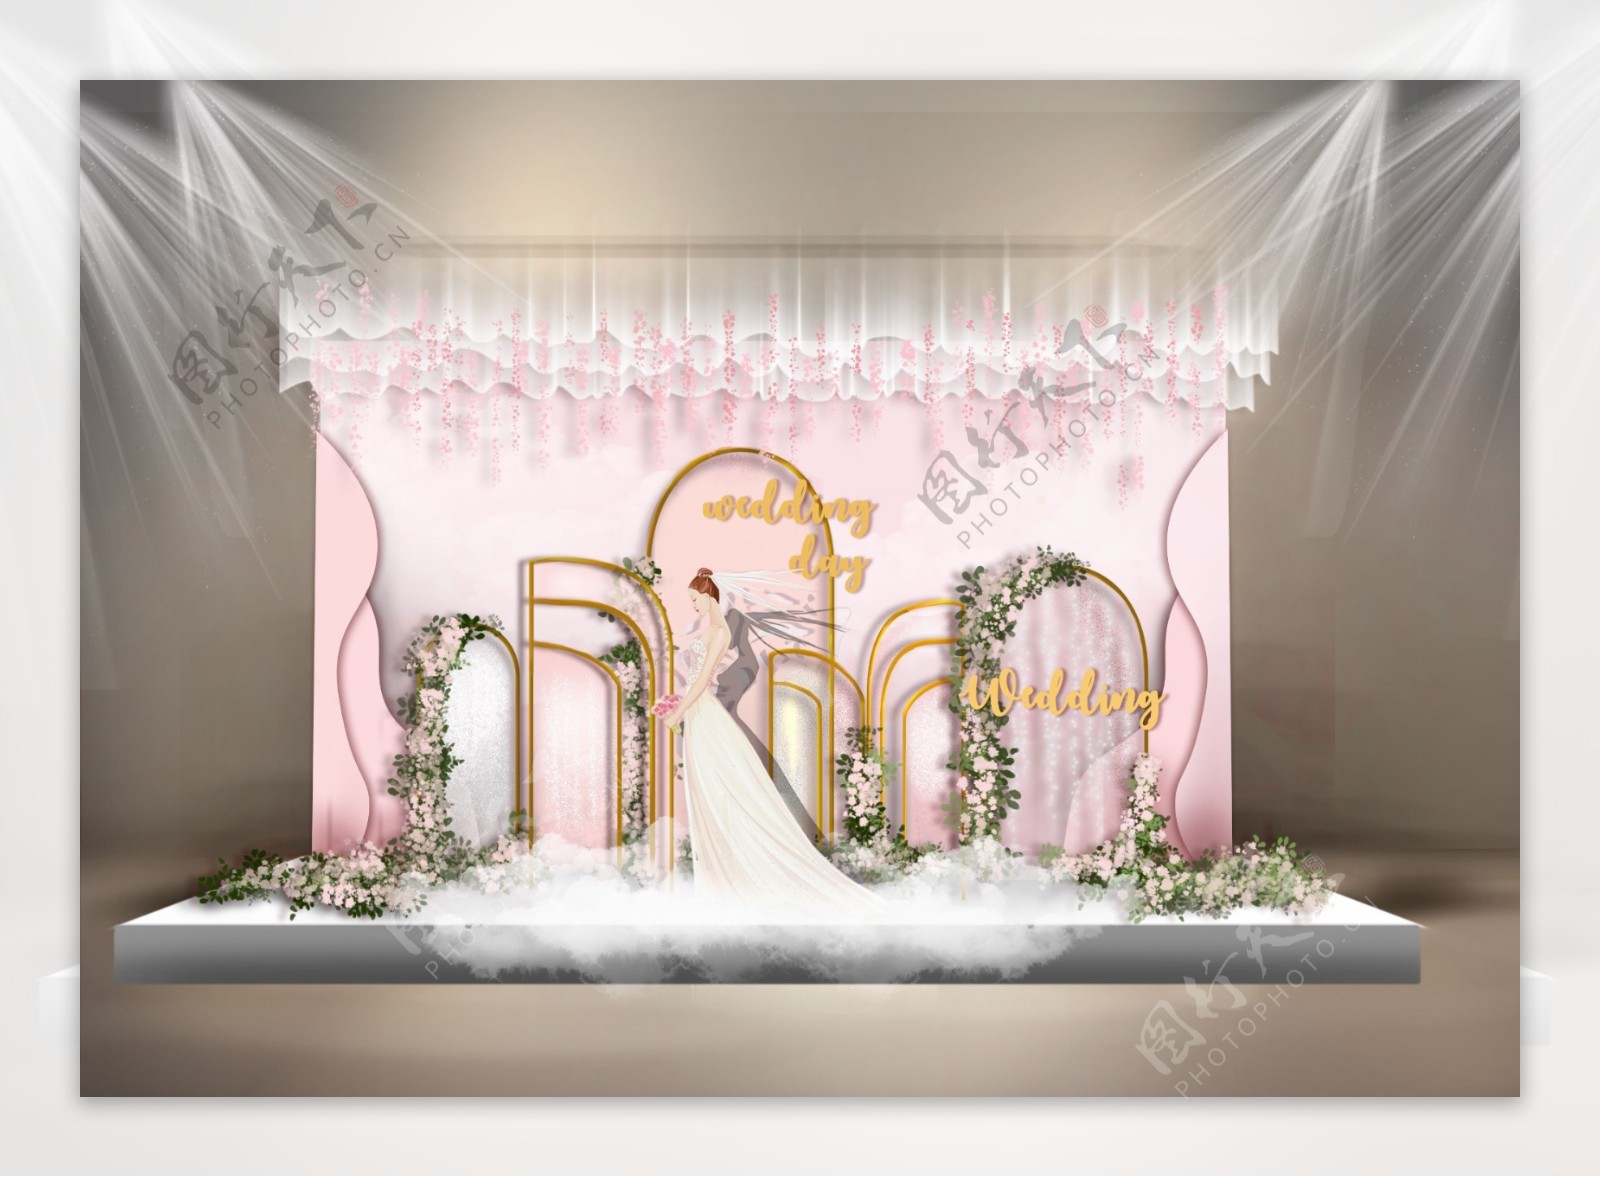 粉白色梦幻主题婚礼迎宾合影区效果图